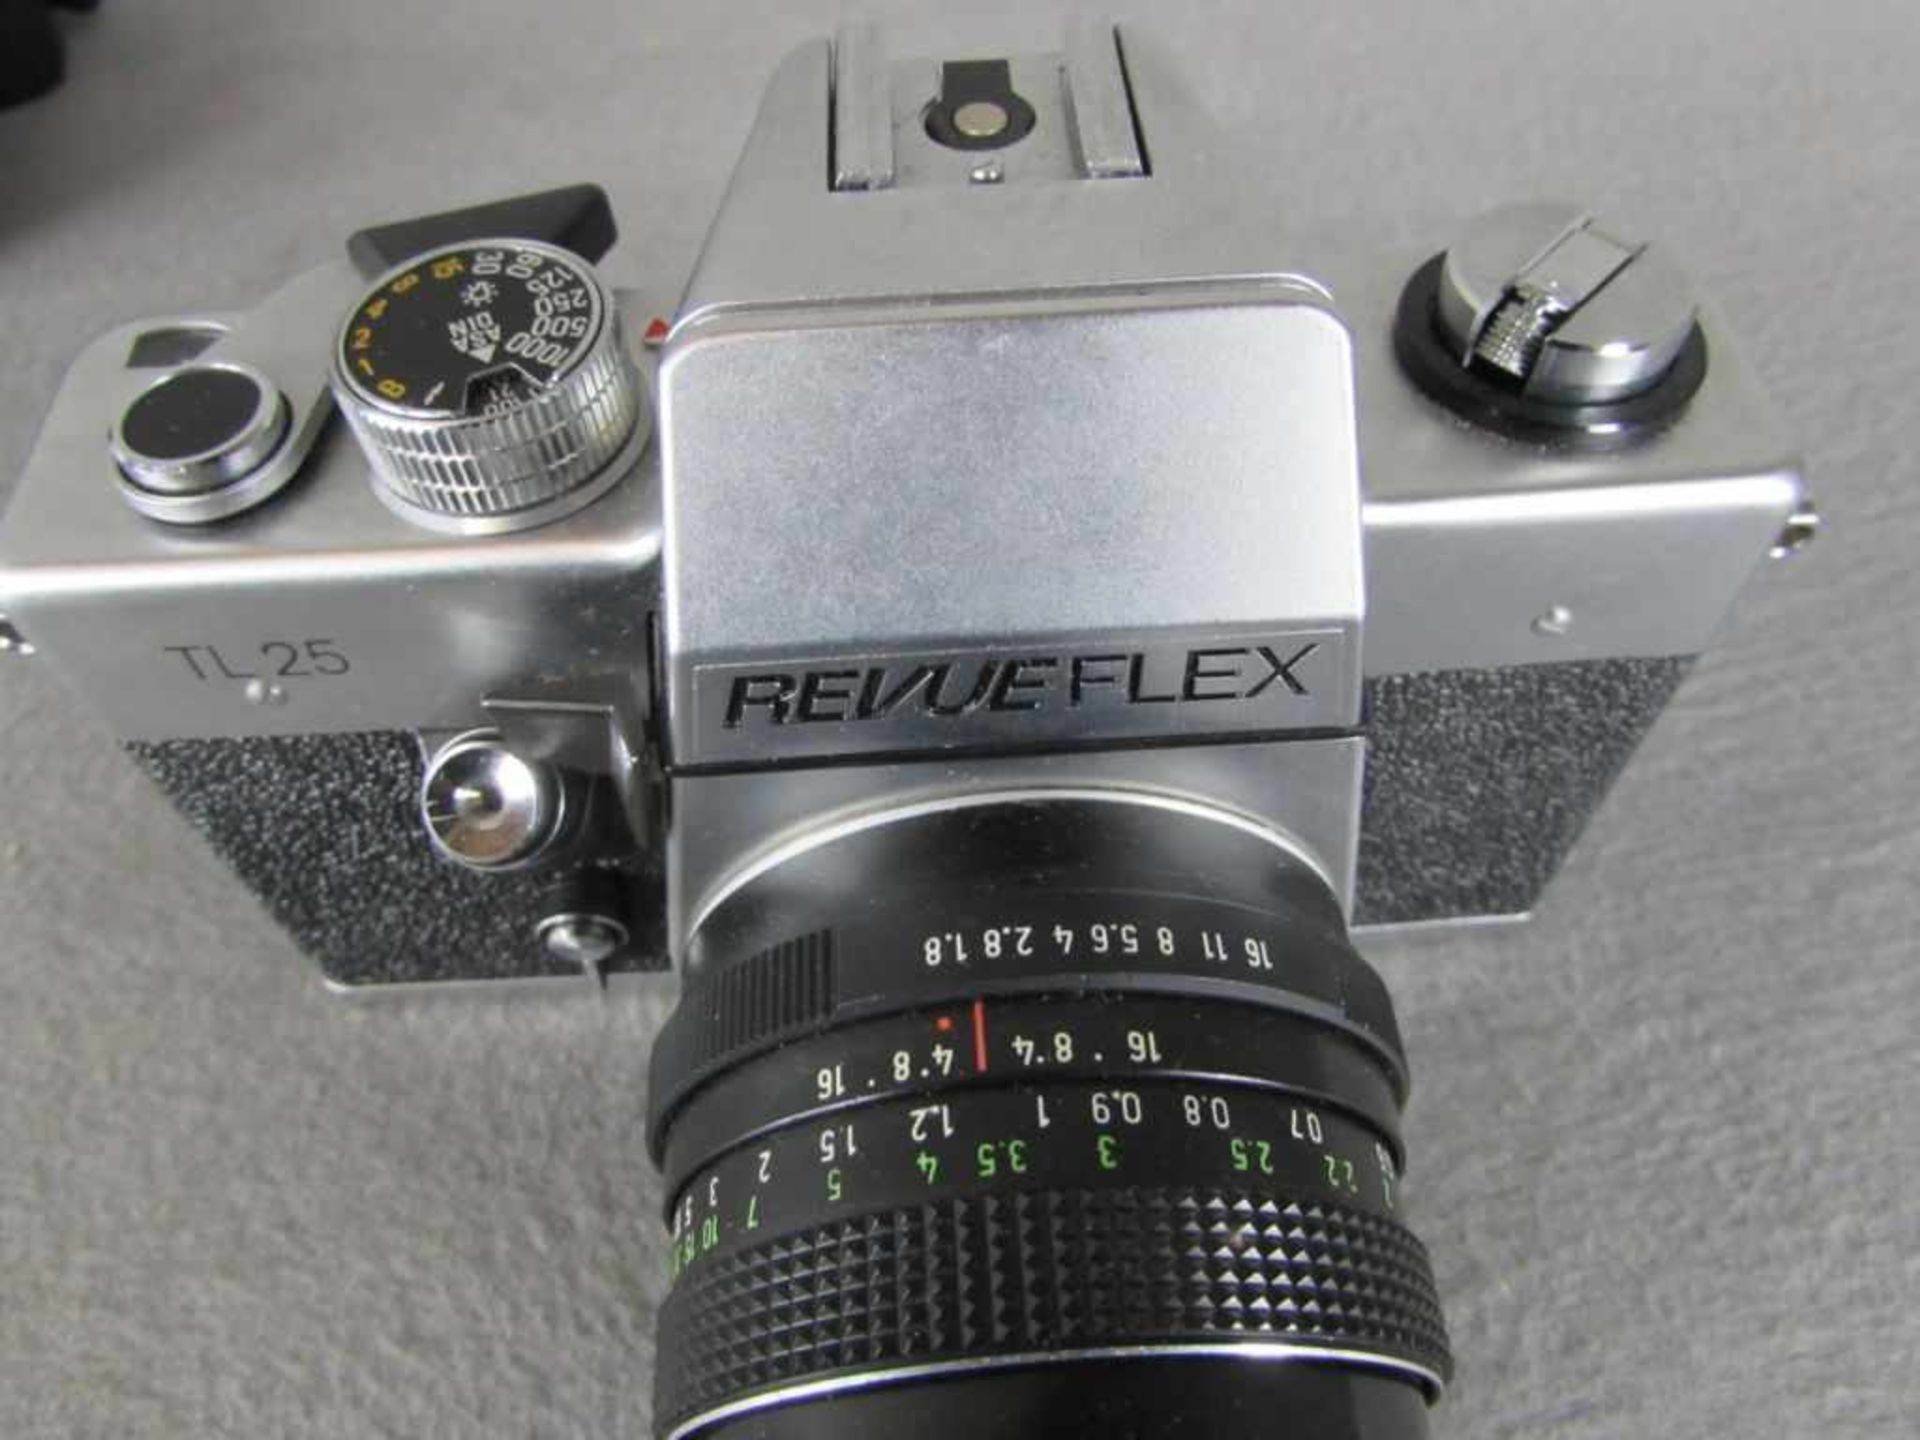 2 Spiegelreflexkameras Minolta und Revue Flex - Bild 2 aus 4